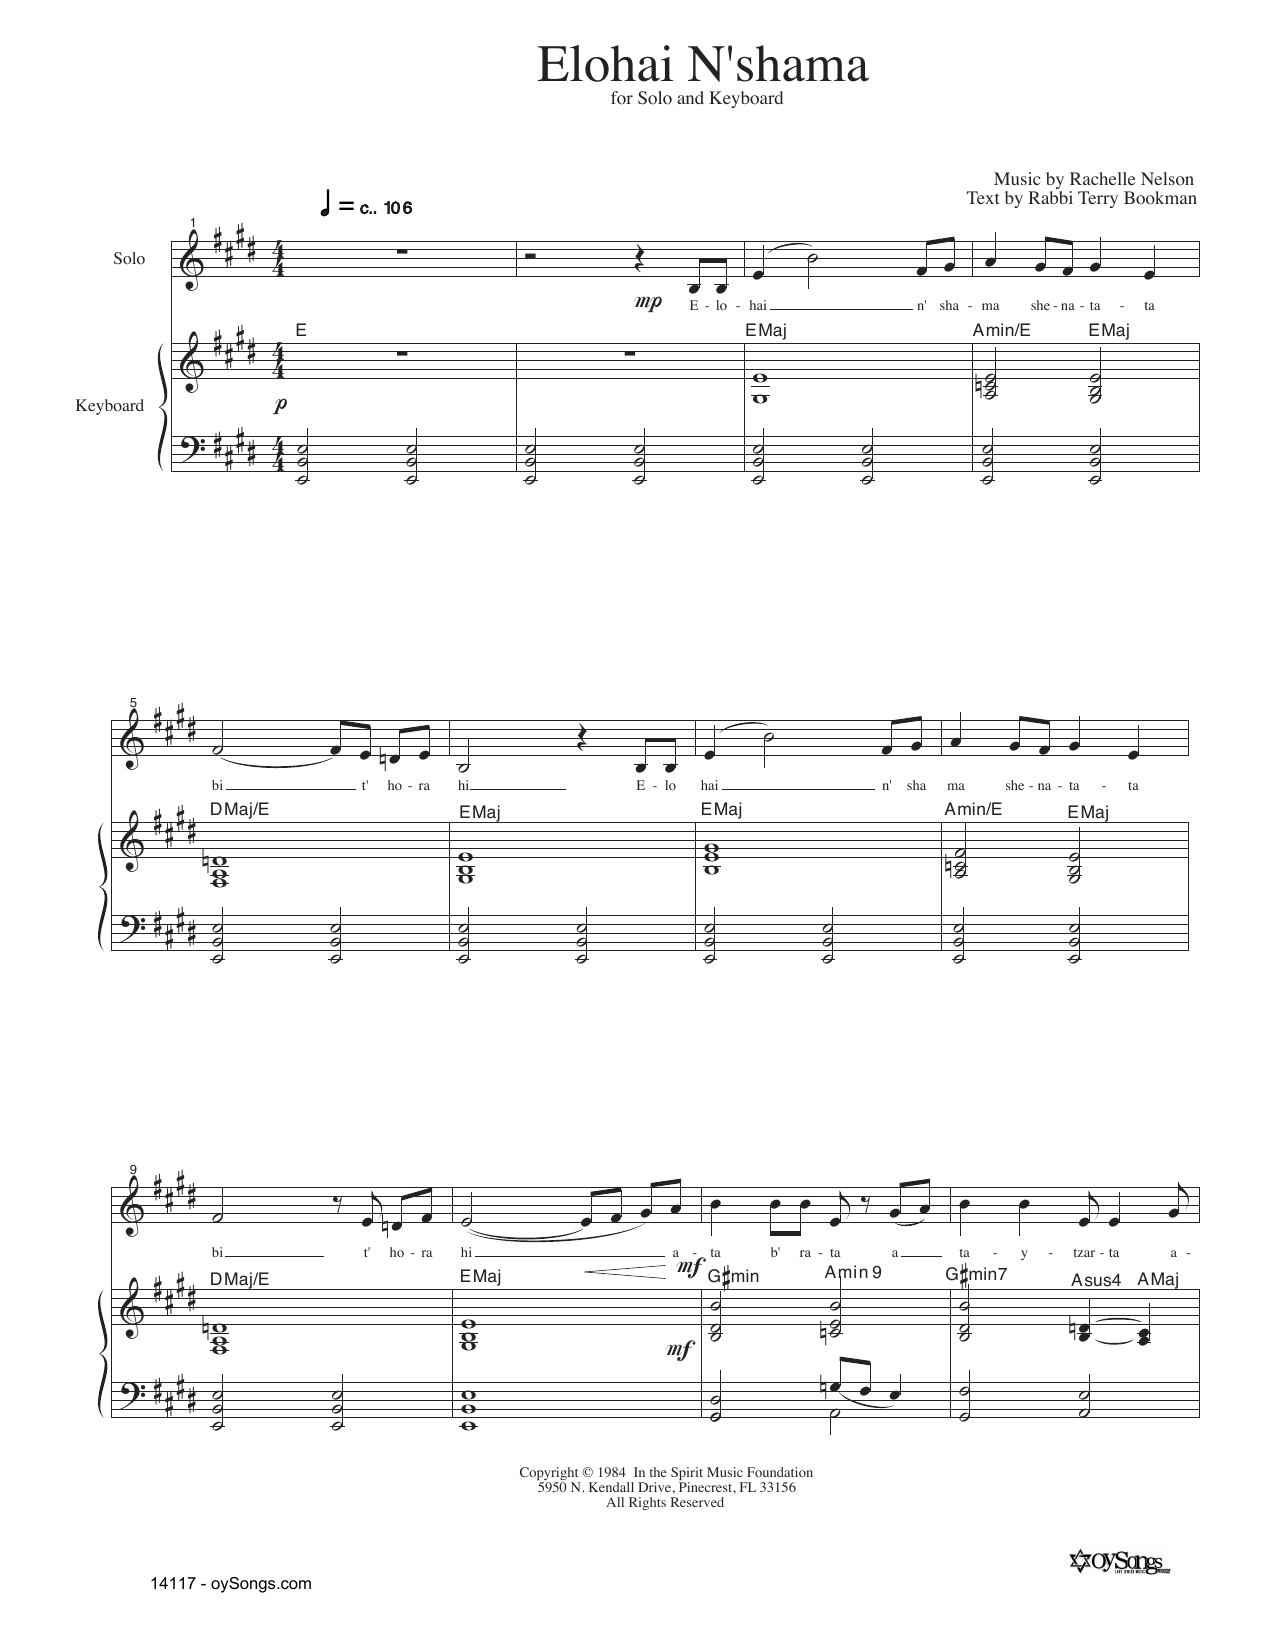 Rachelle Nelson Elohai N'shama Sheet Music Notes & Chords for SATB Choir - Download or Print PDF